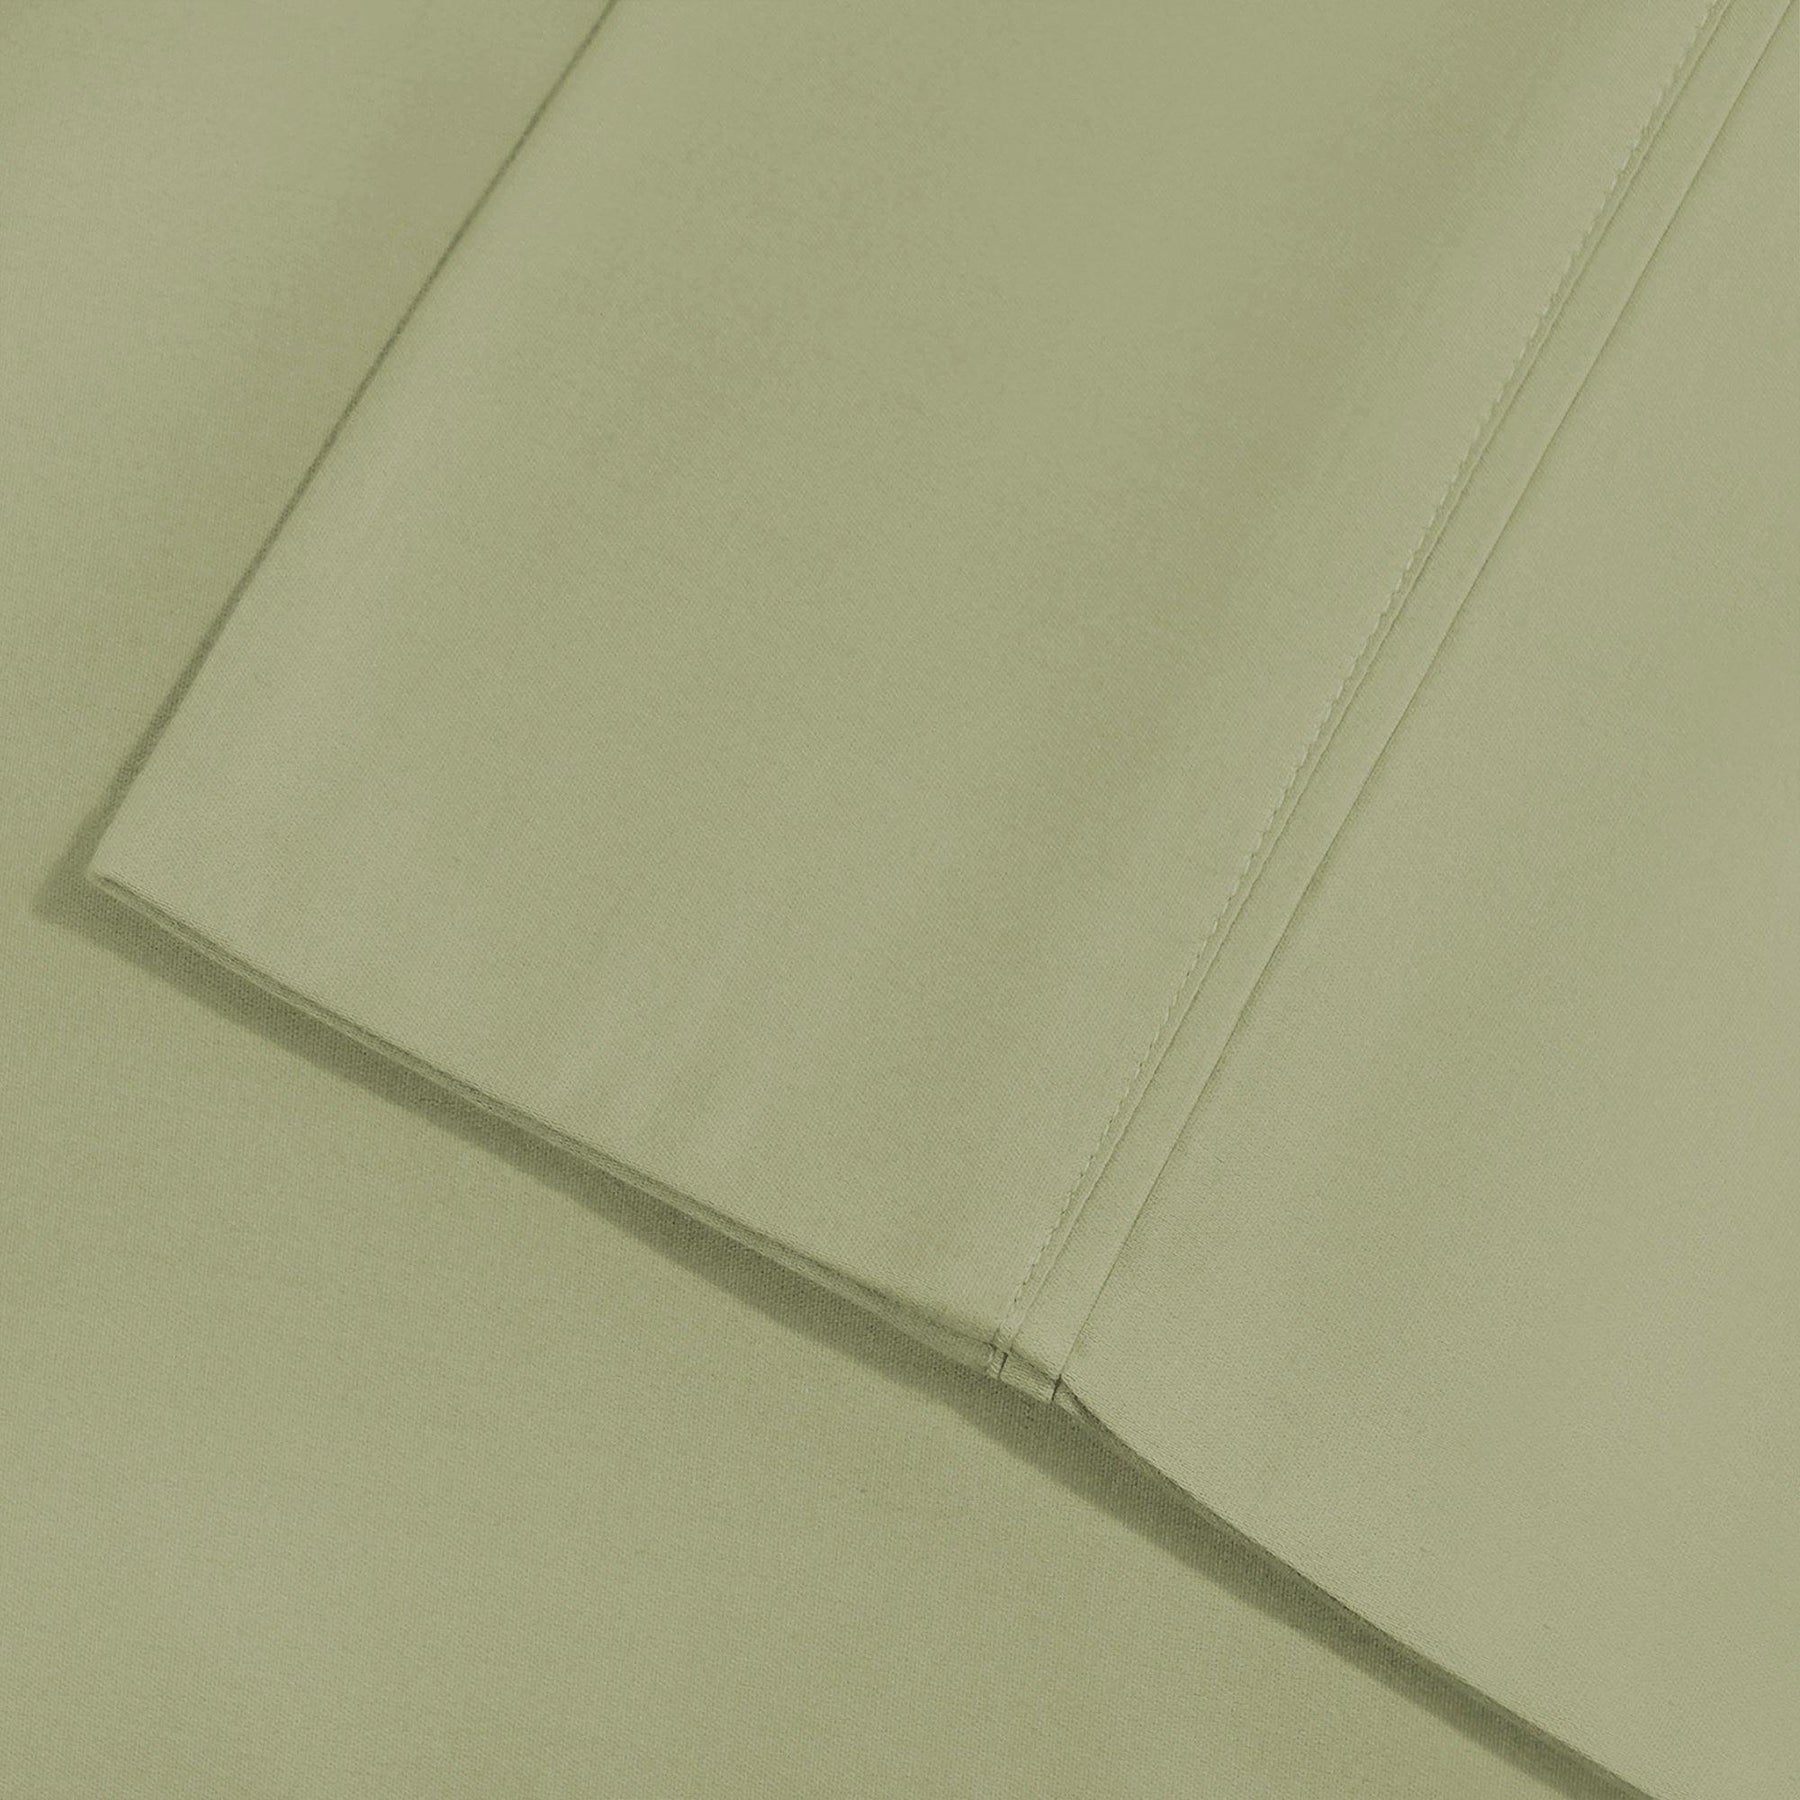  Superior Solid Count Cotton Blend Deep Pocket Sheet Set - Sage